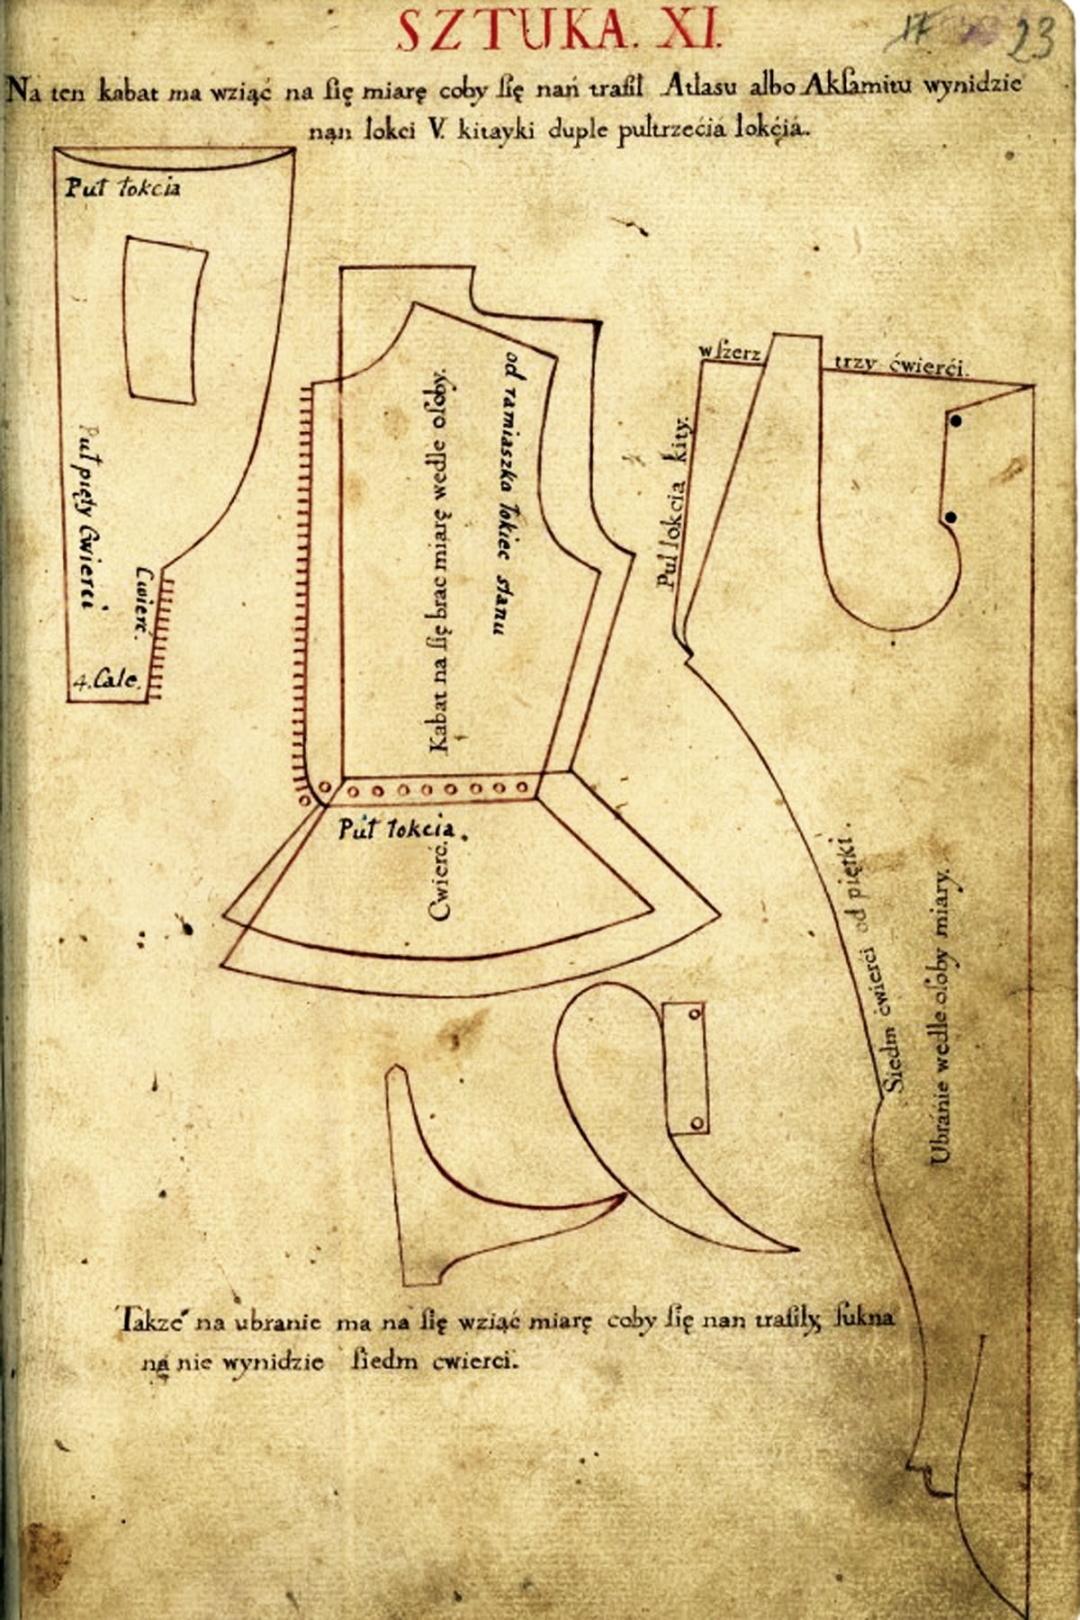 22 аркуш із крравецької книги 1640 го року, де відтворено крій убранє, з підписами